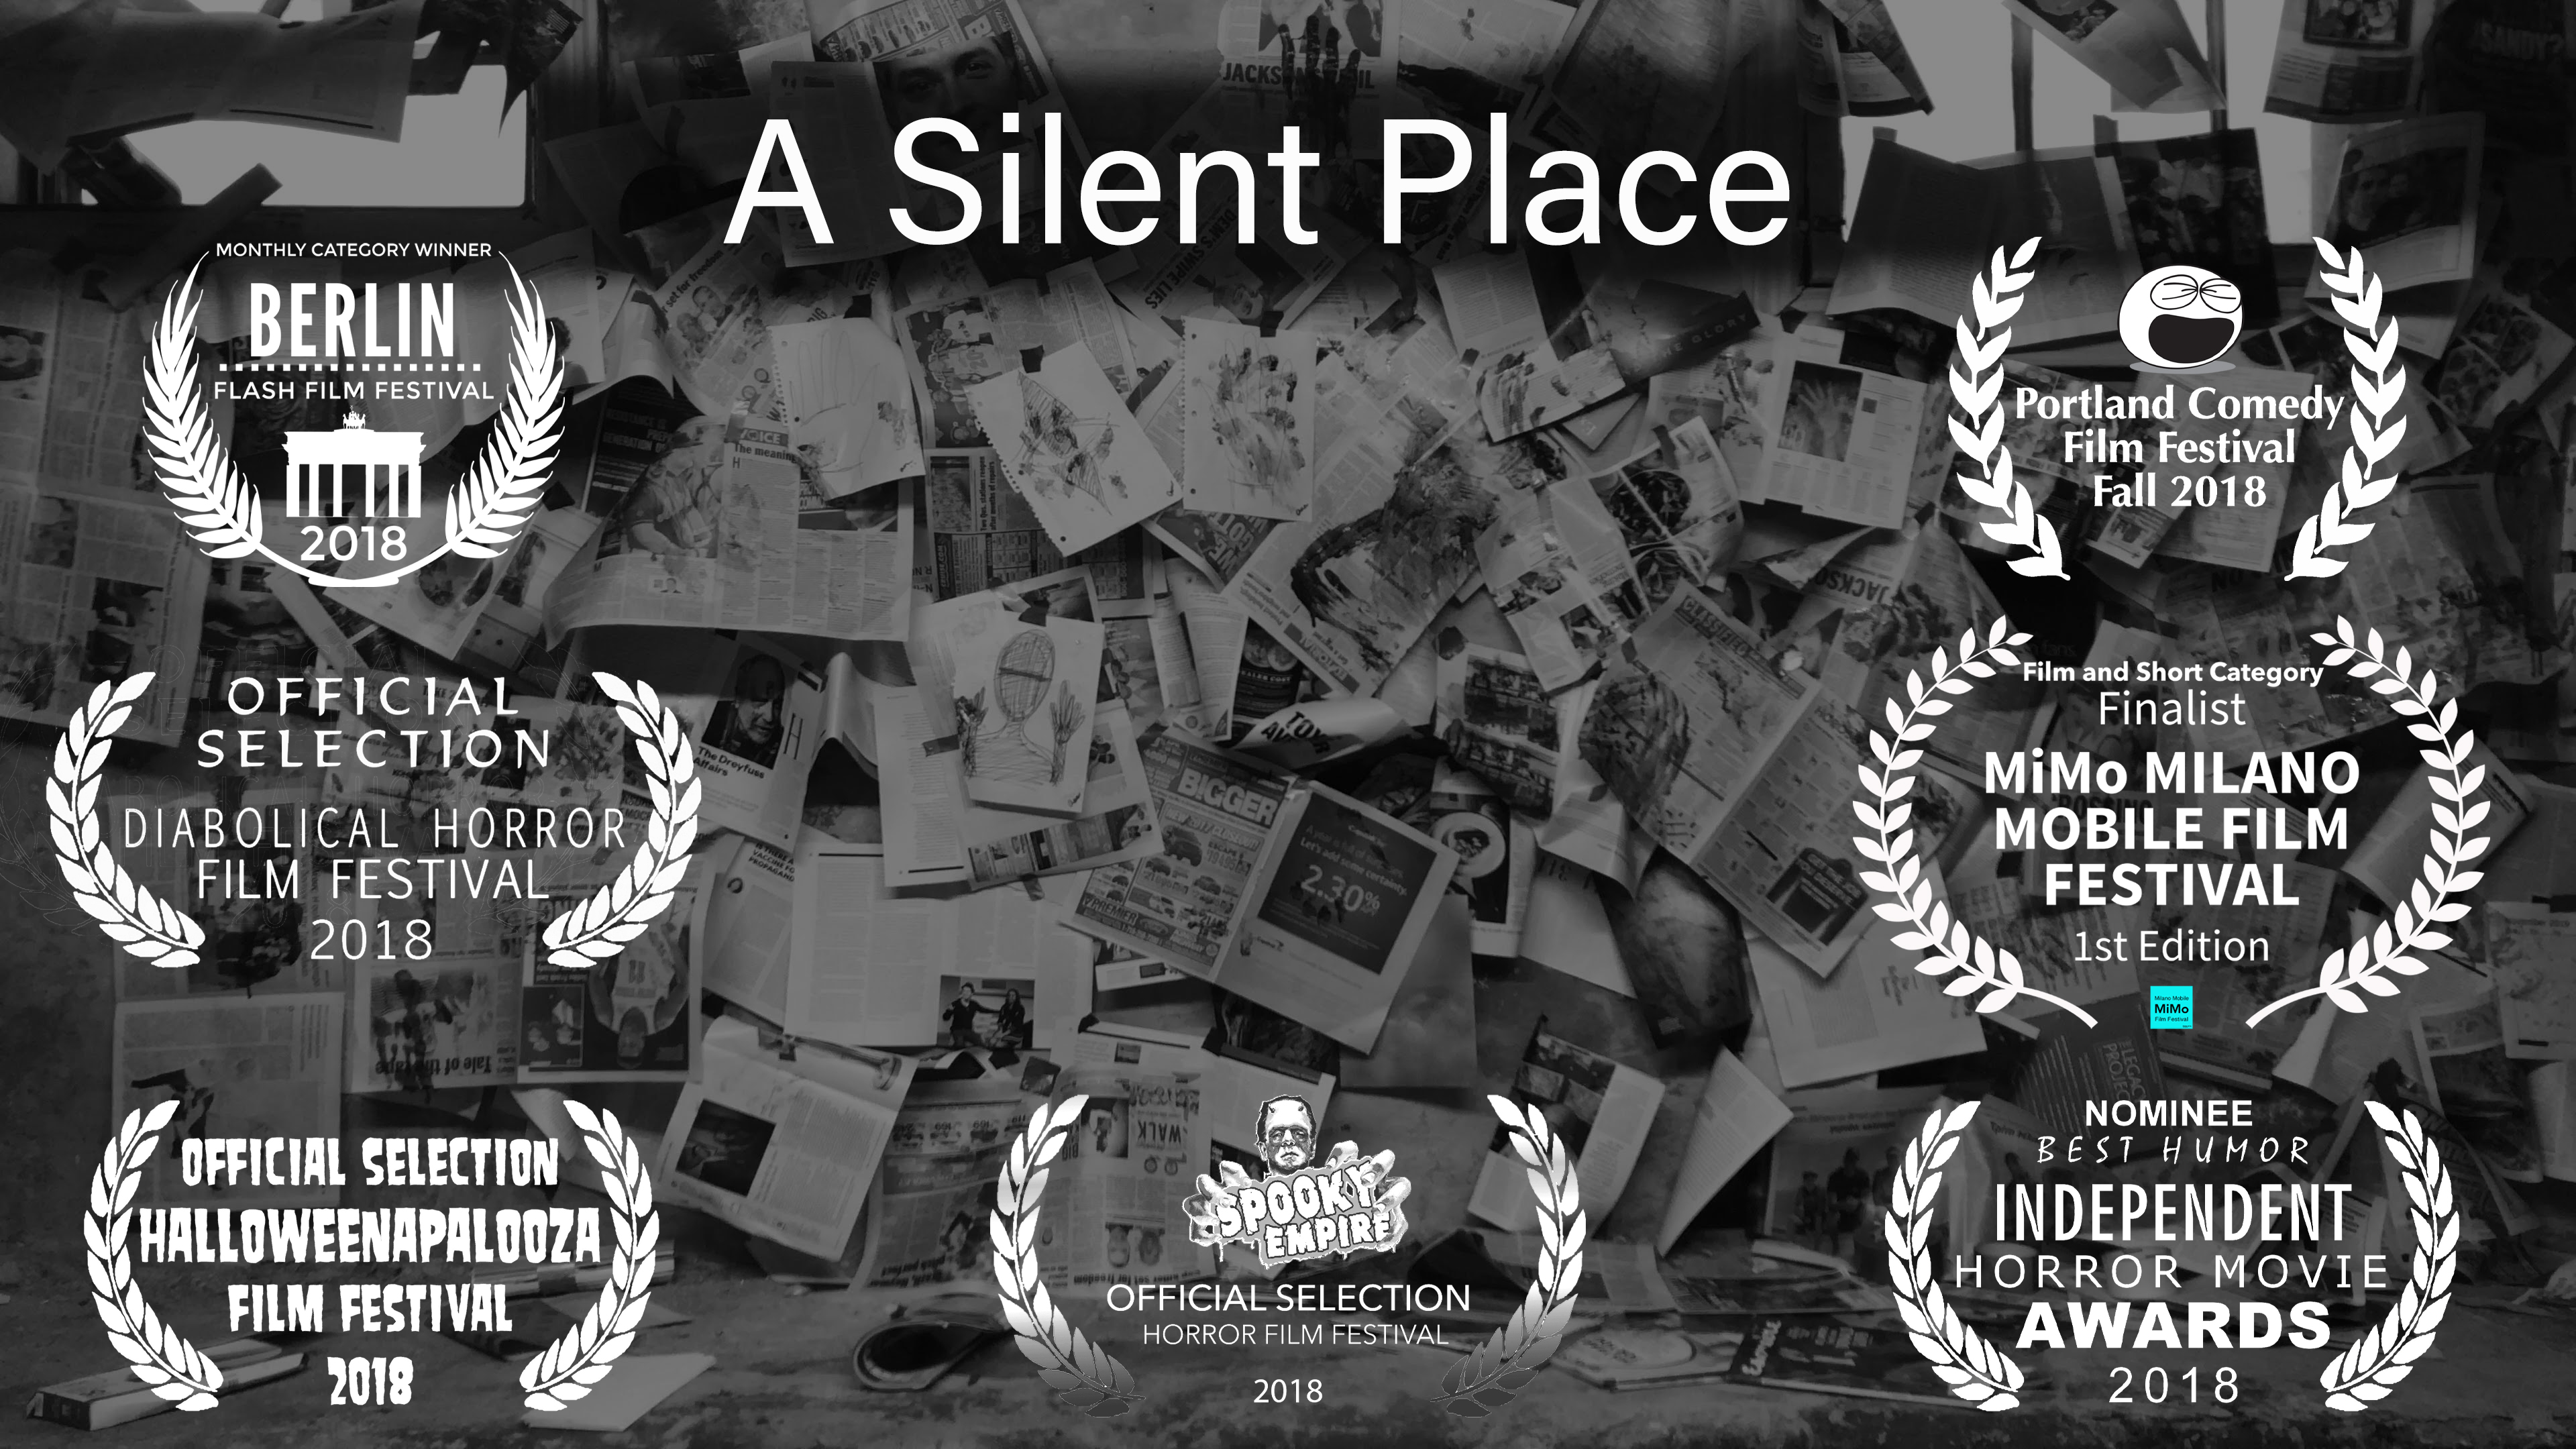 A Silent Place laurels poster